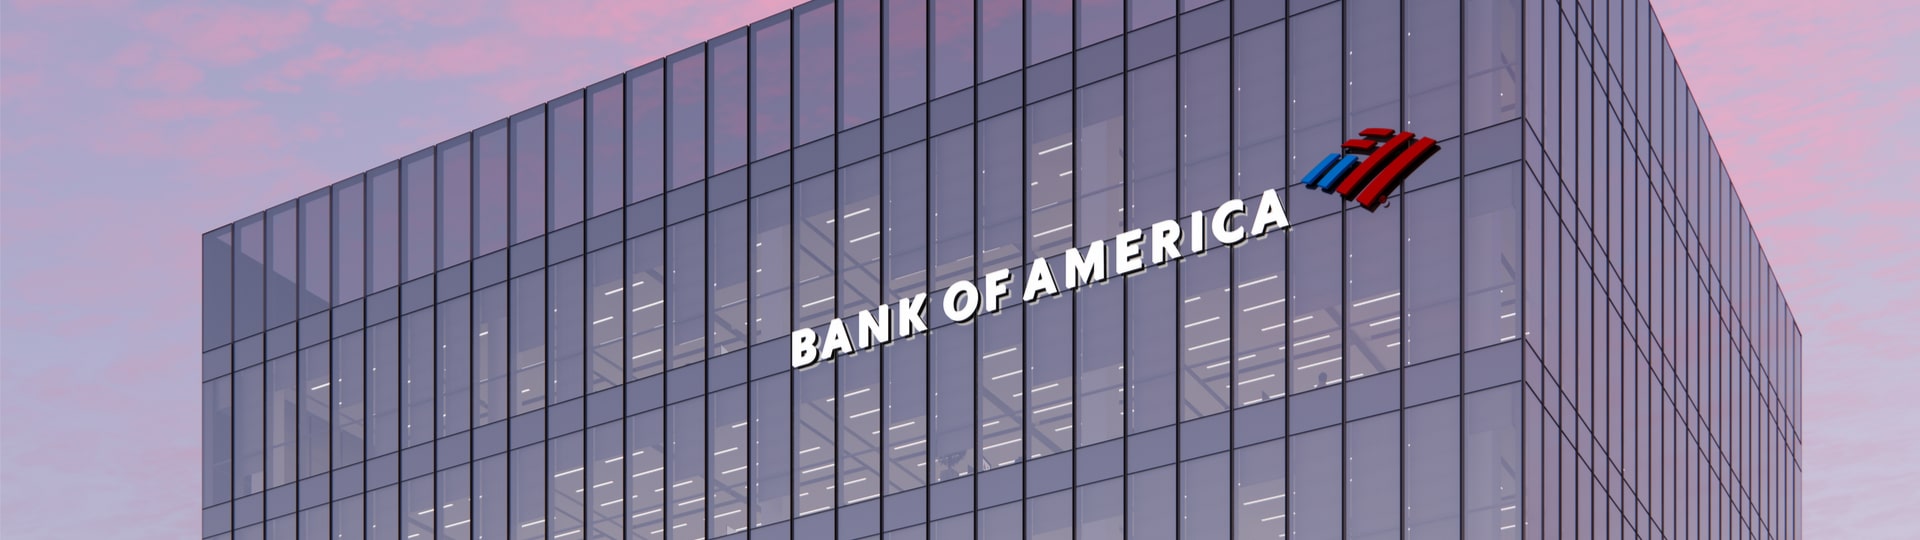 Bank of America klesl zisk o devět procent